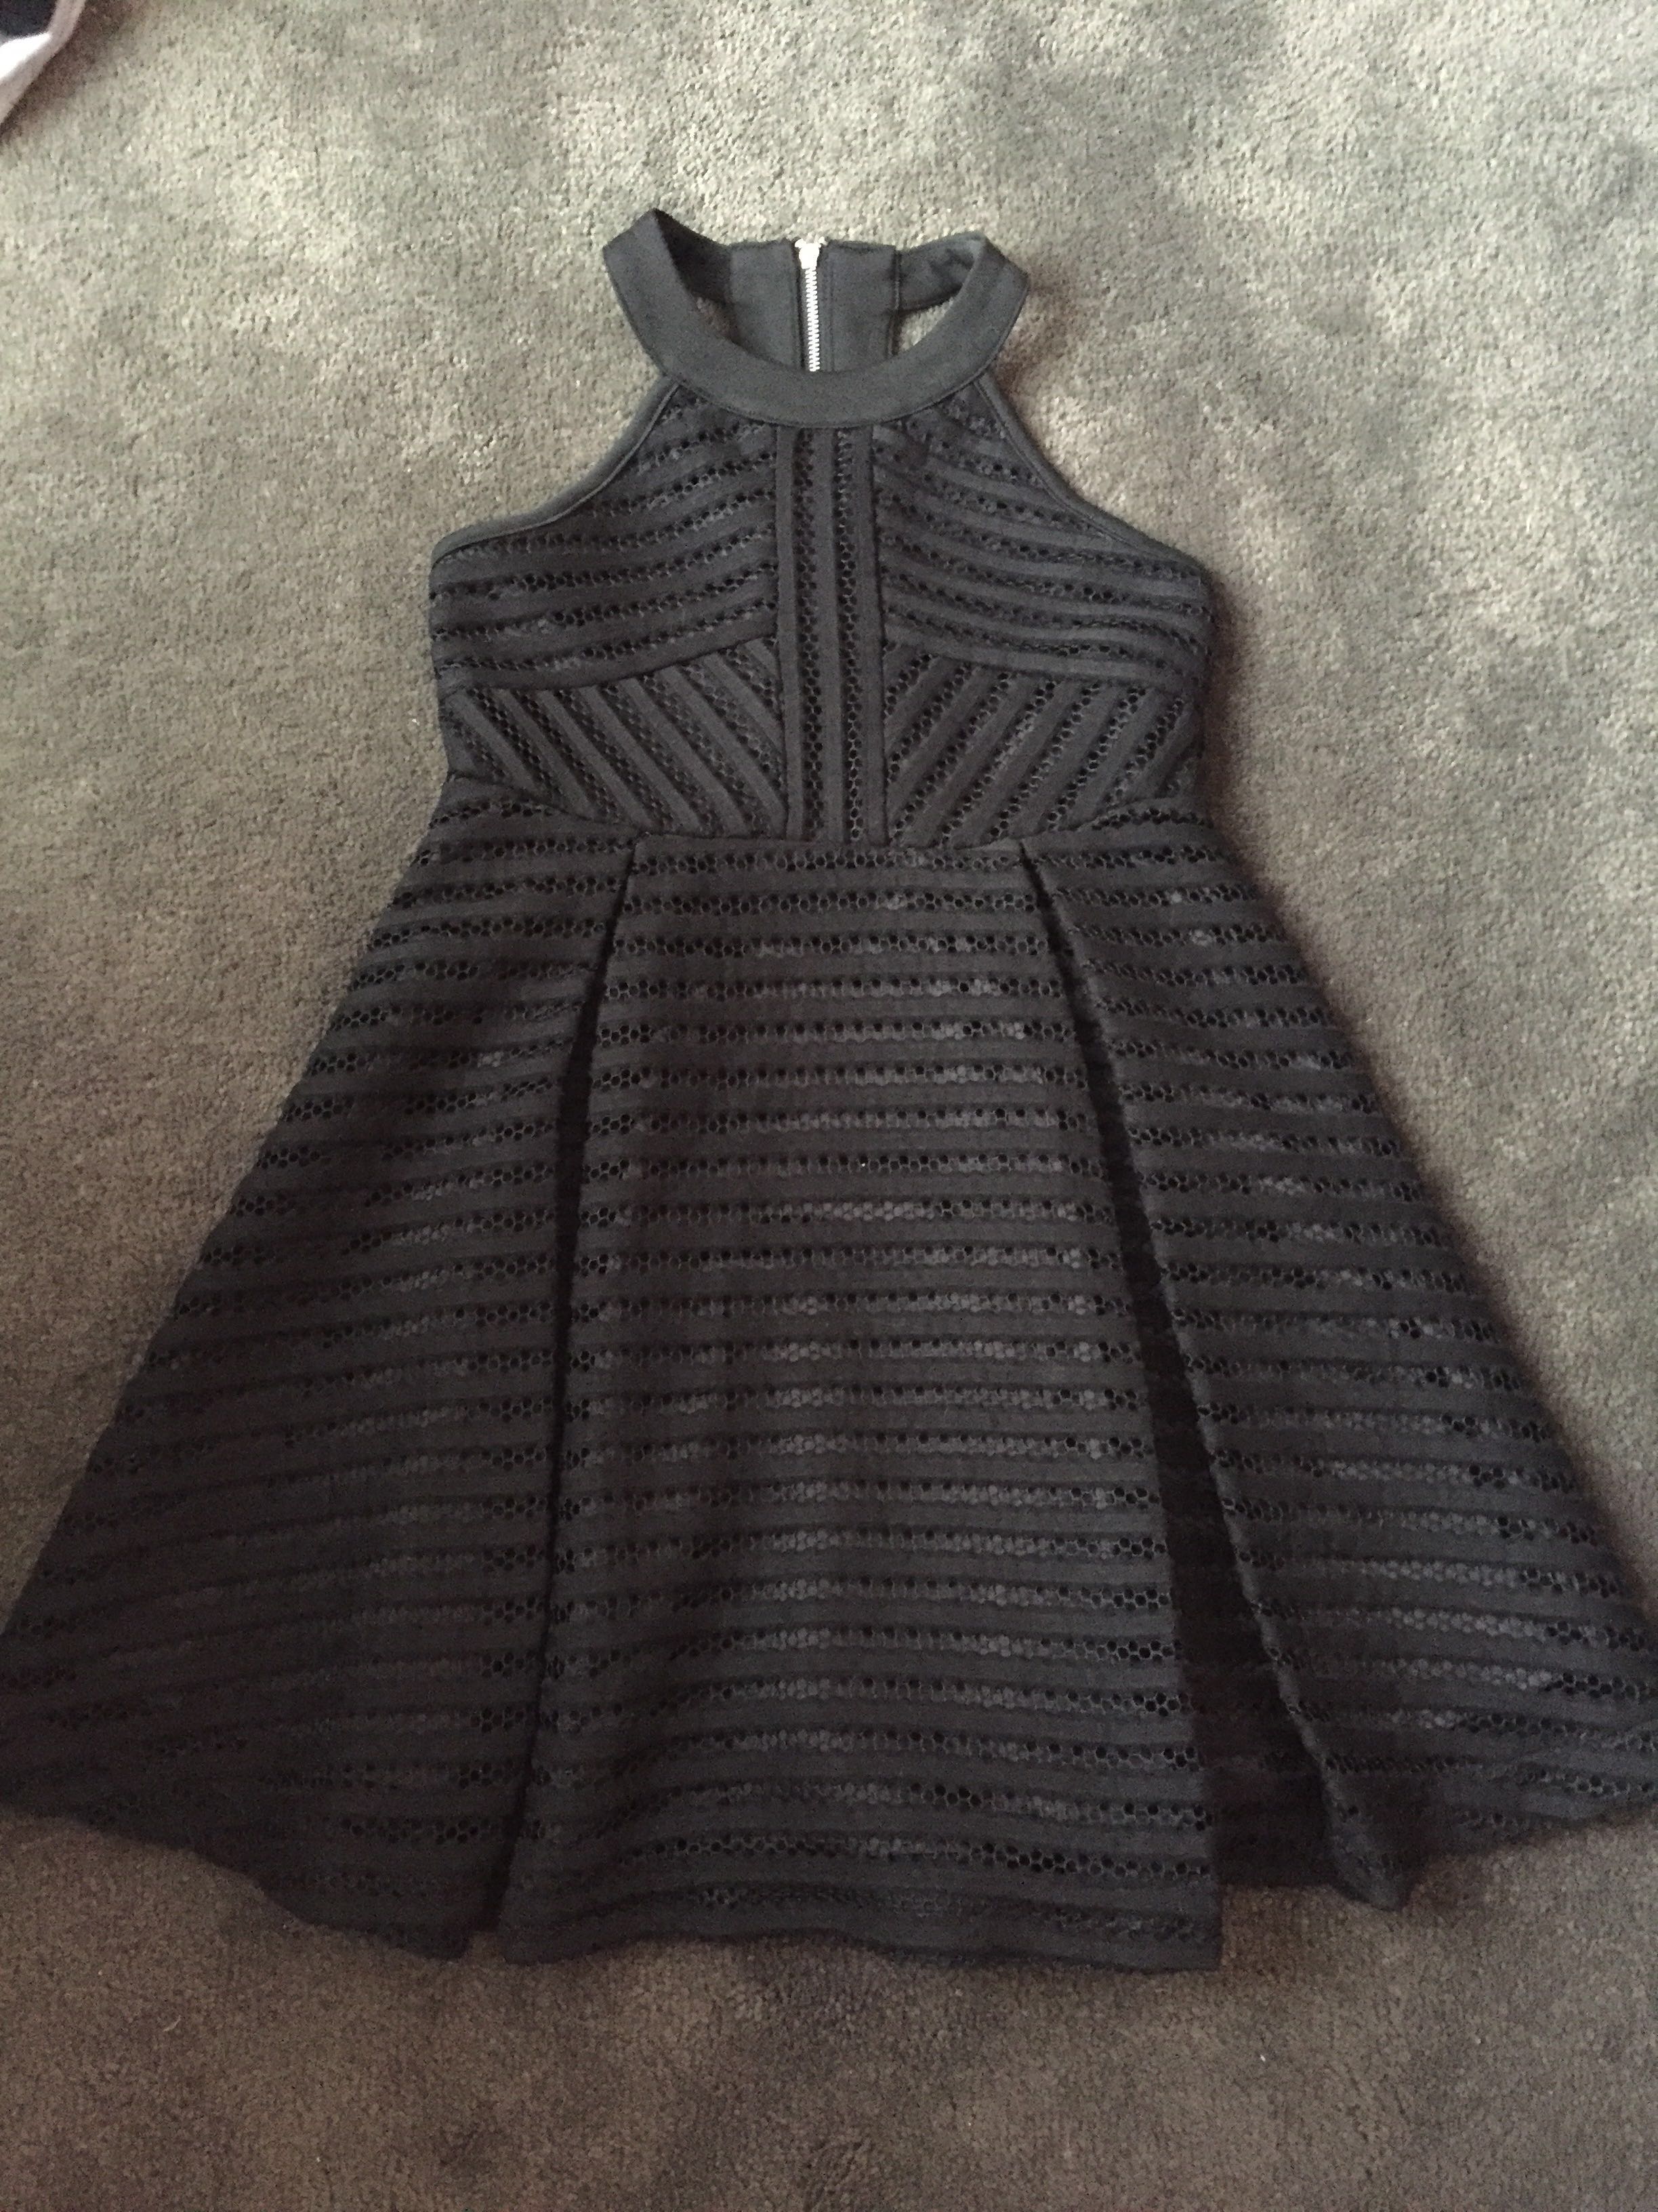 bardot junior black dress